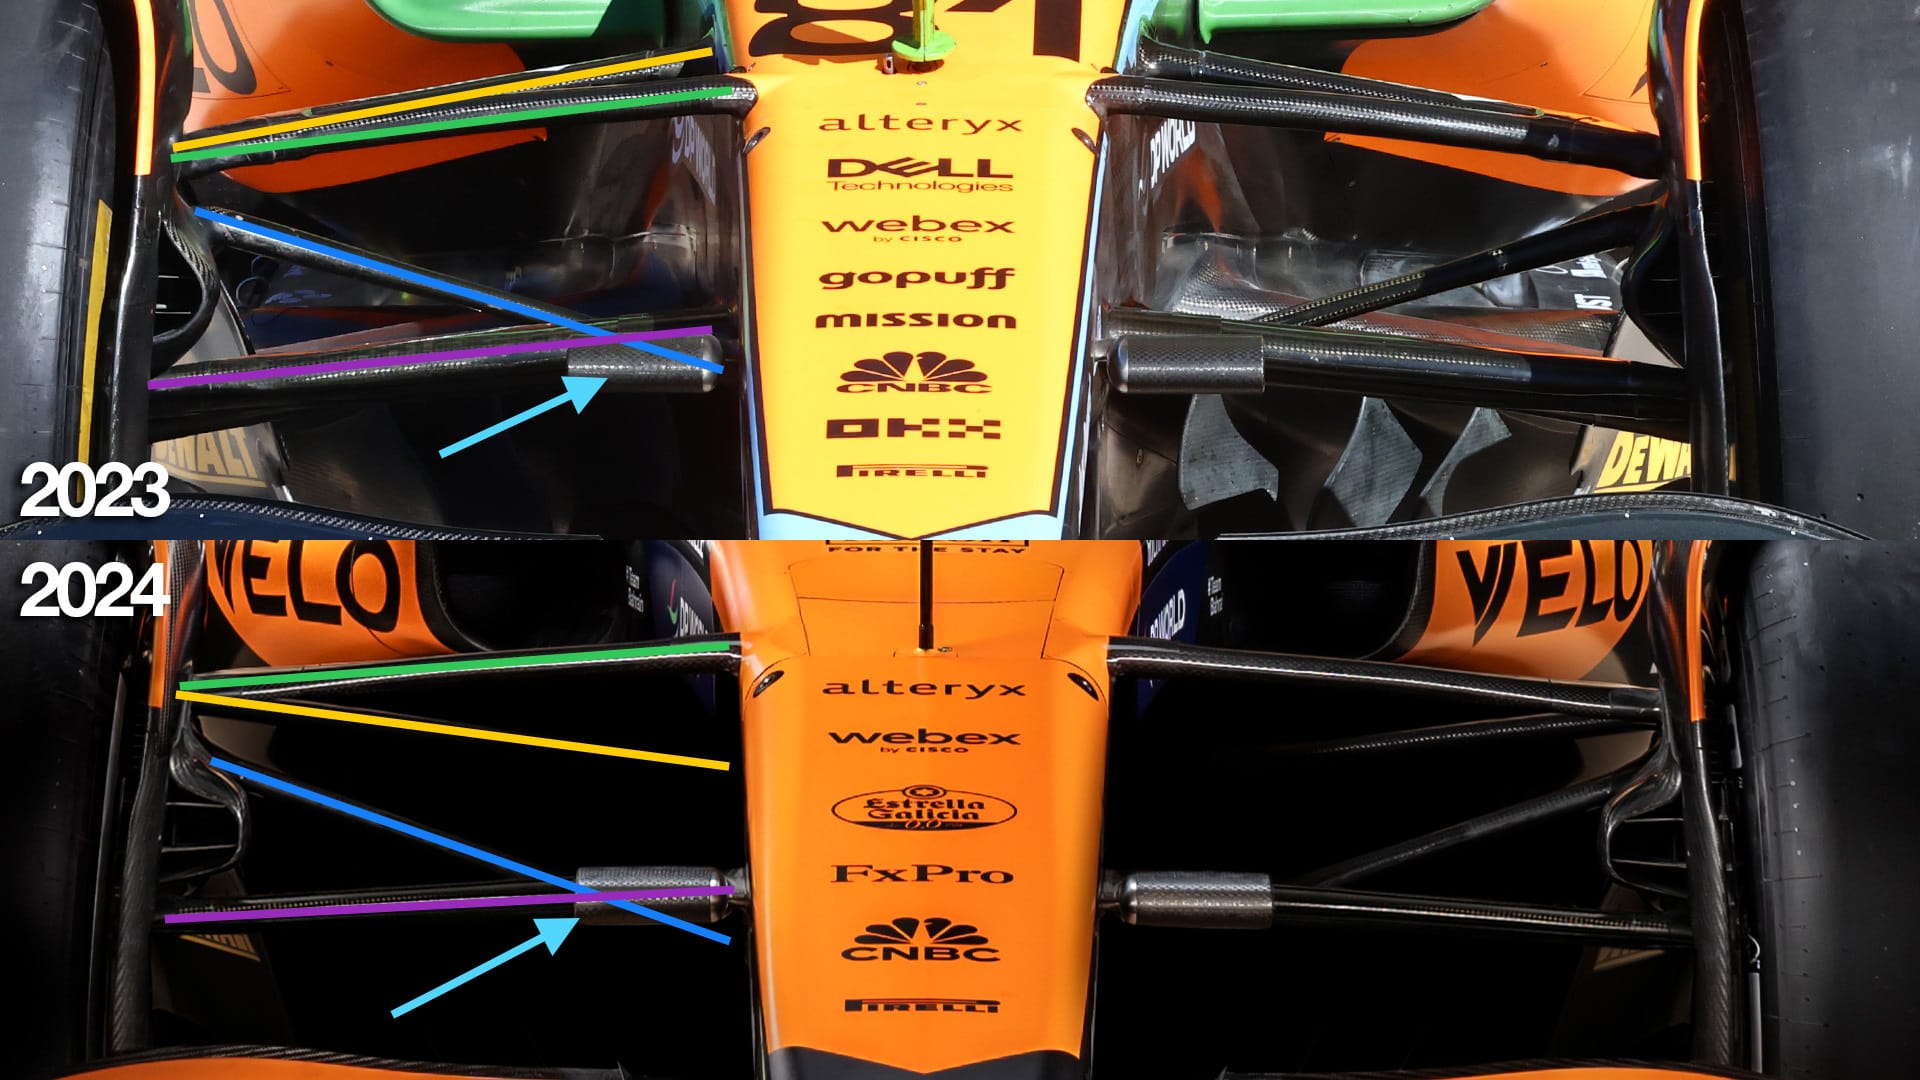 McLaren F1 2023 2024 comparison